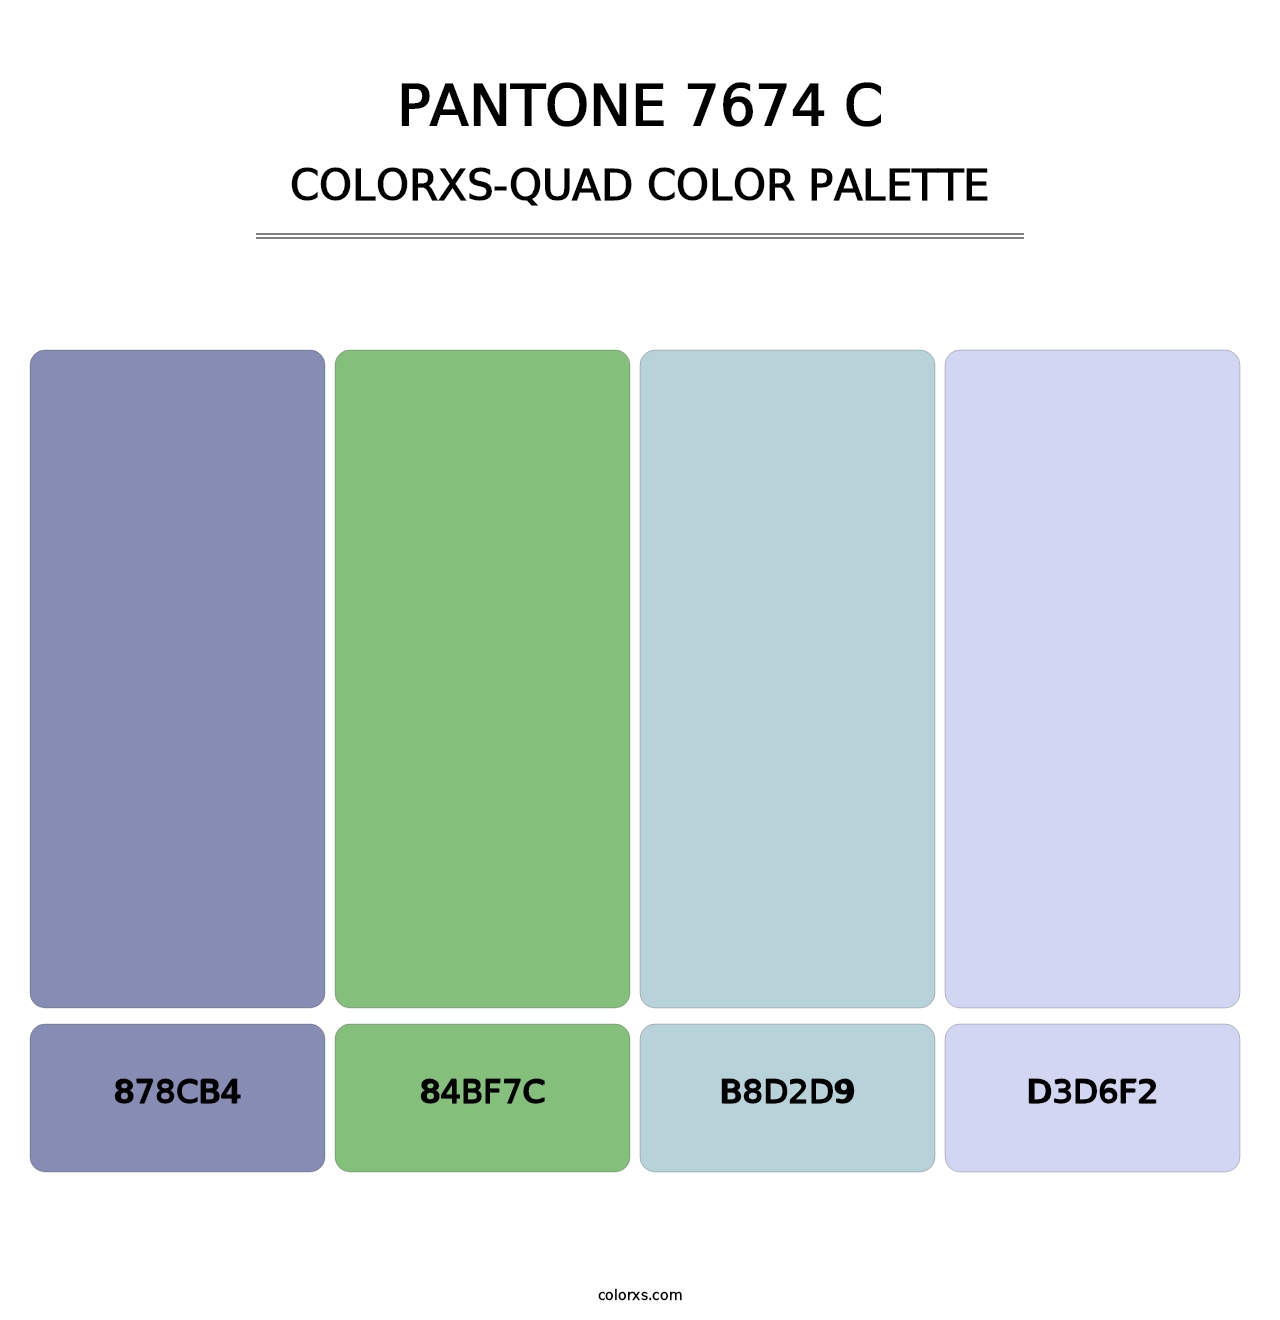 PANTONE 7674 C - Colorxs Quad Palette